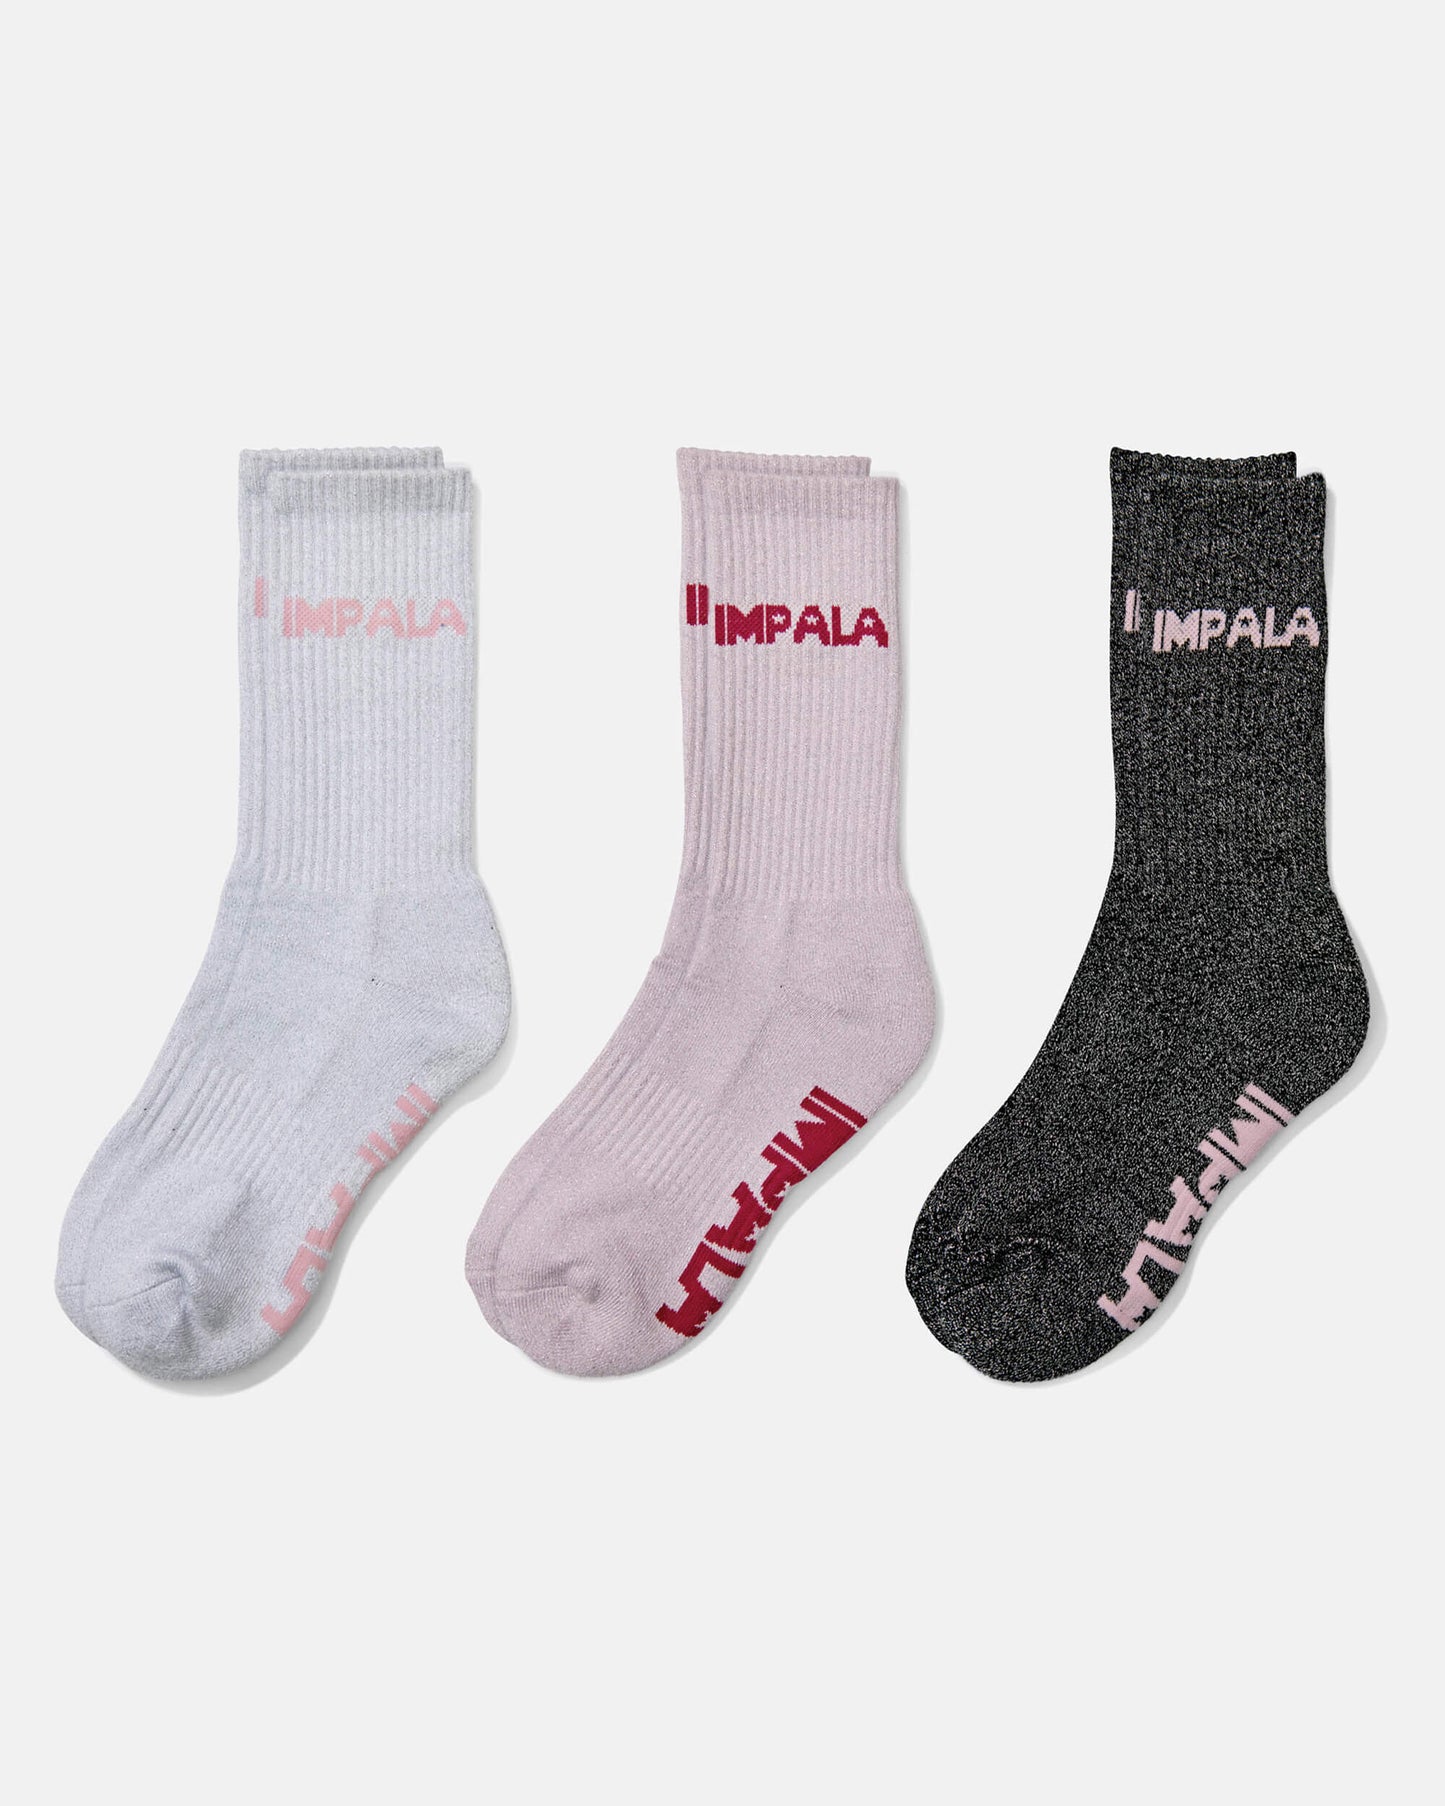 Impala Socks Impala Skate Sock 3pk in Sparkle (chaussettes à patins)